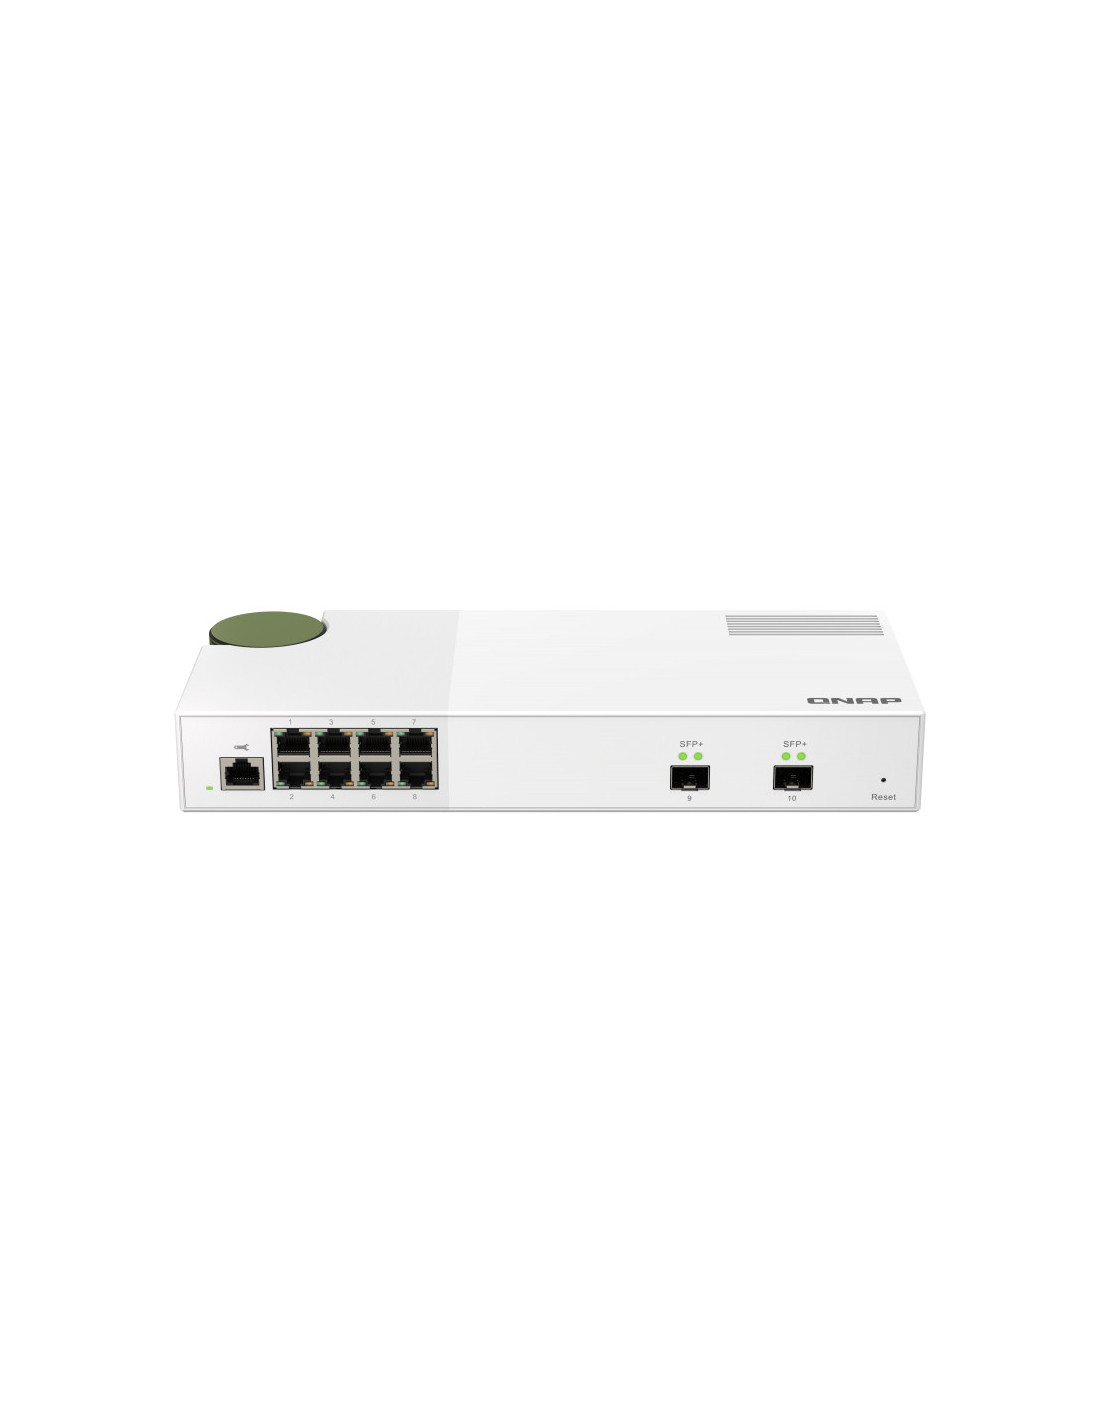 Switch  es  QSW-M2108-2S Switch 10GbE - 10 puertos (8 RJ45, 2 SFP+), agregación de puertos 802.3ad